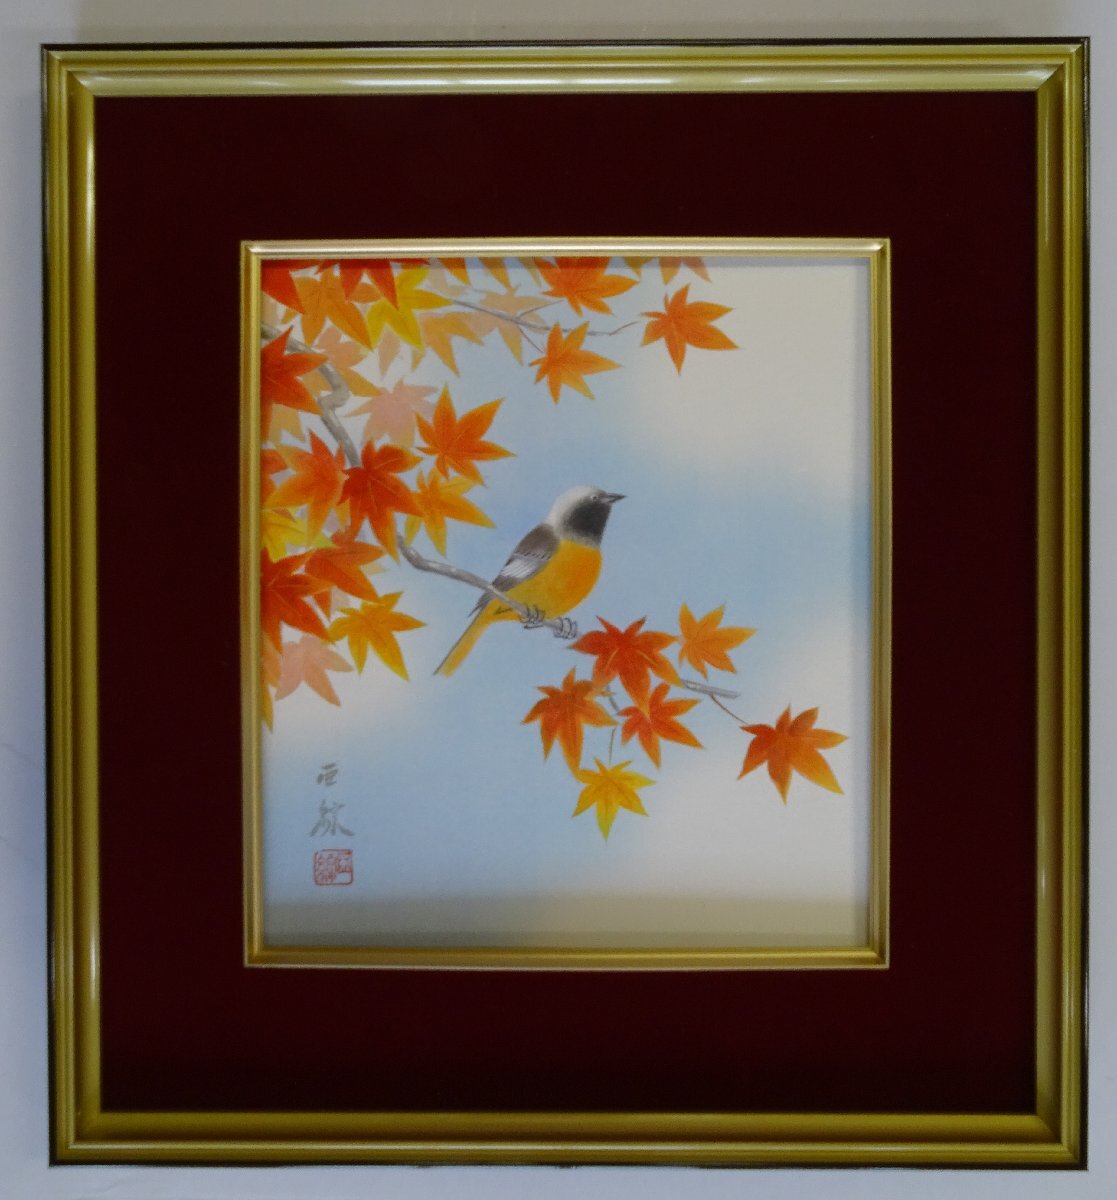 ･作者：林麻生 ･绘画主题：秋叶 ･四季绘 ･手绘 NO-6-12.8, 绘画, 日本画, 其他的